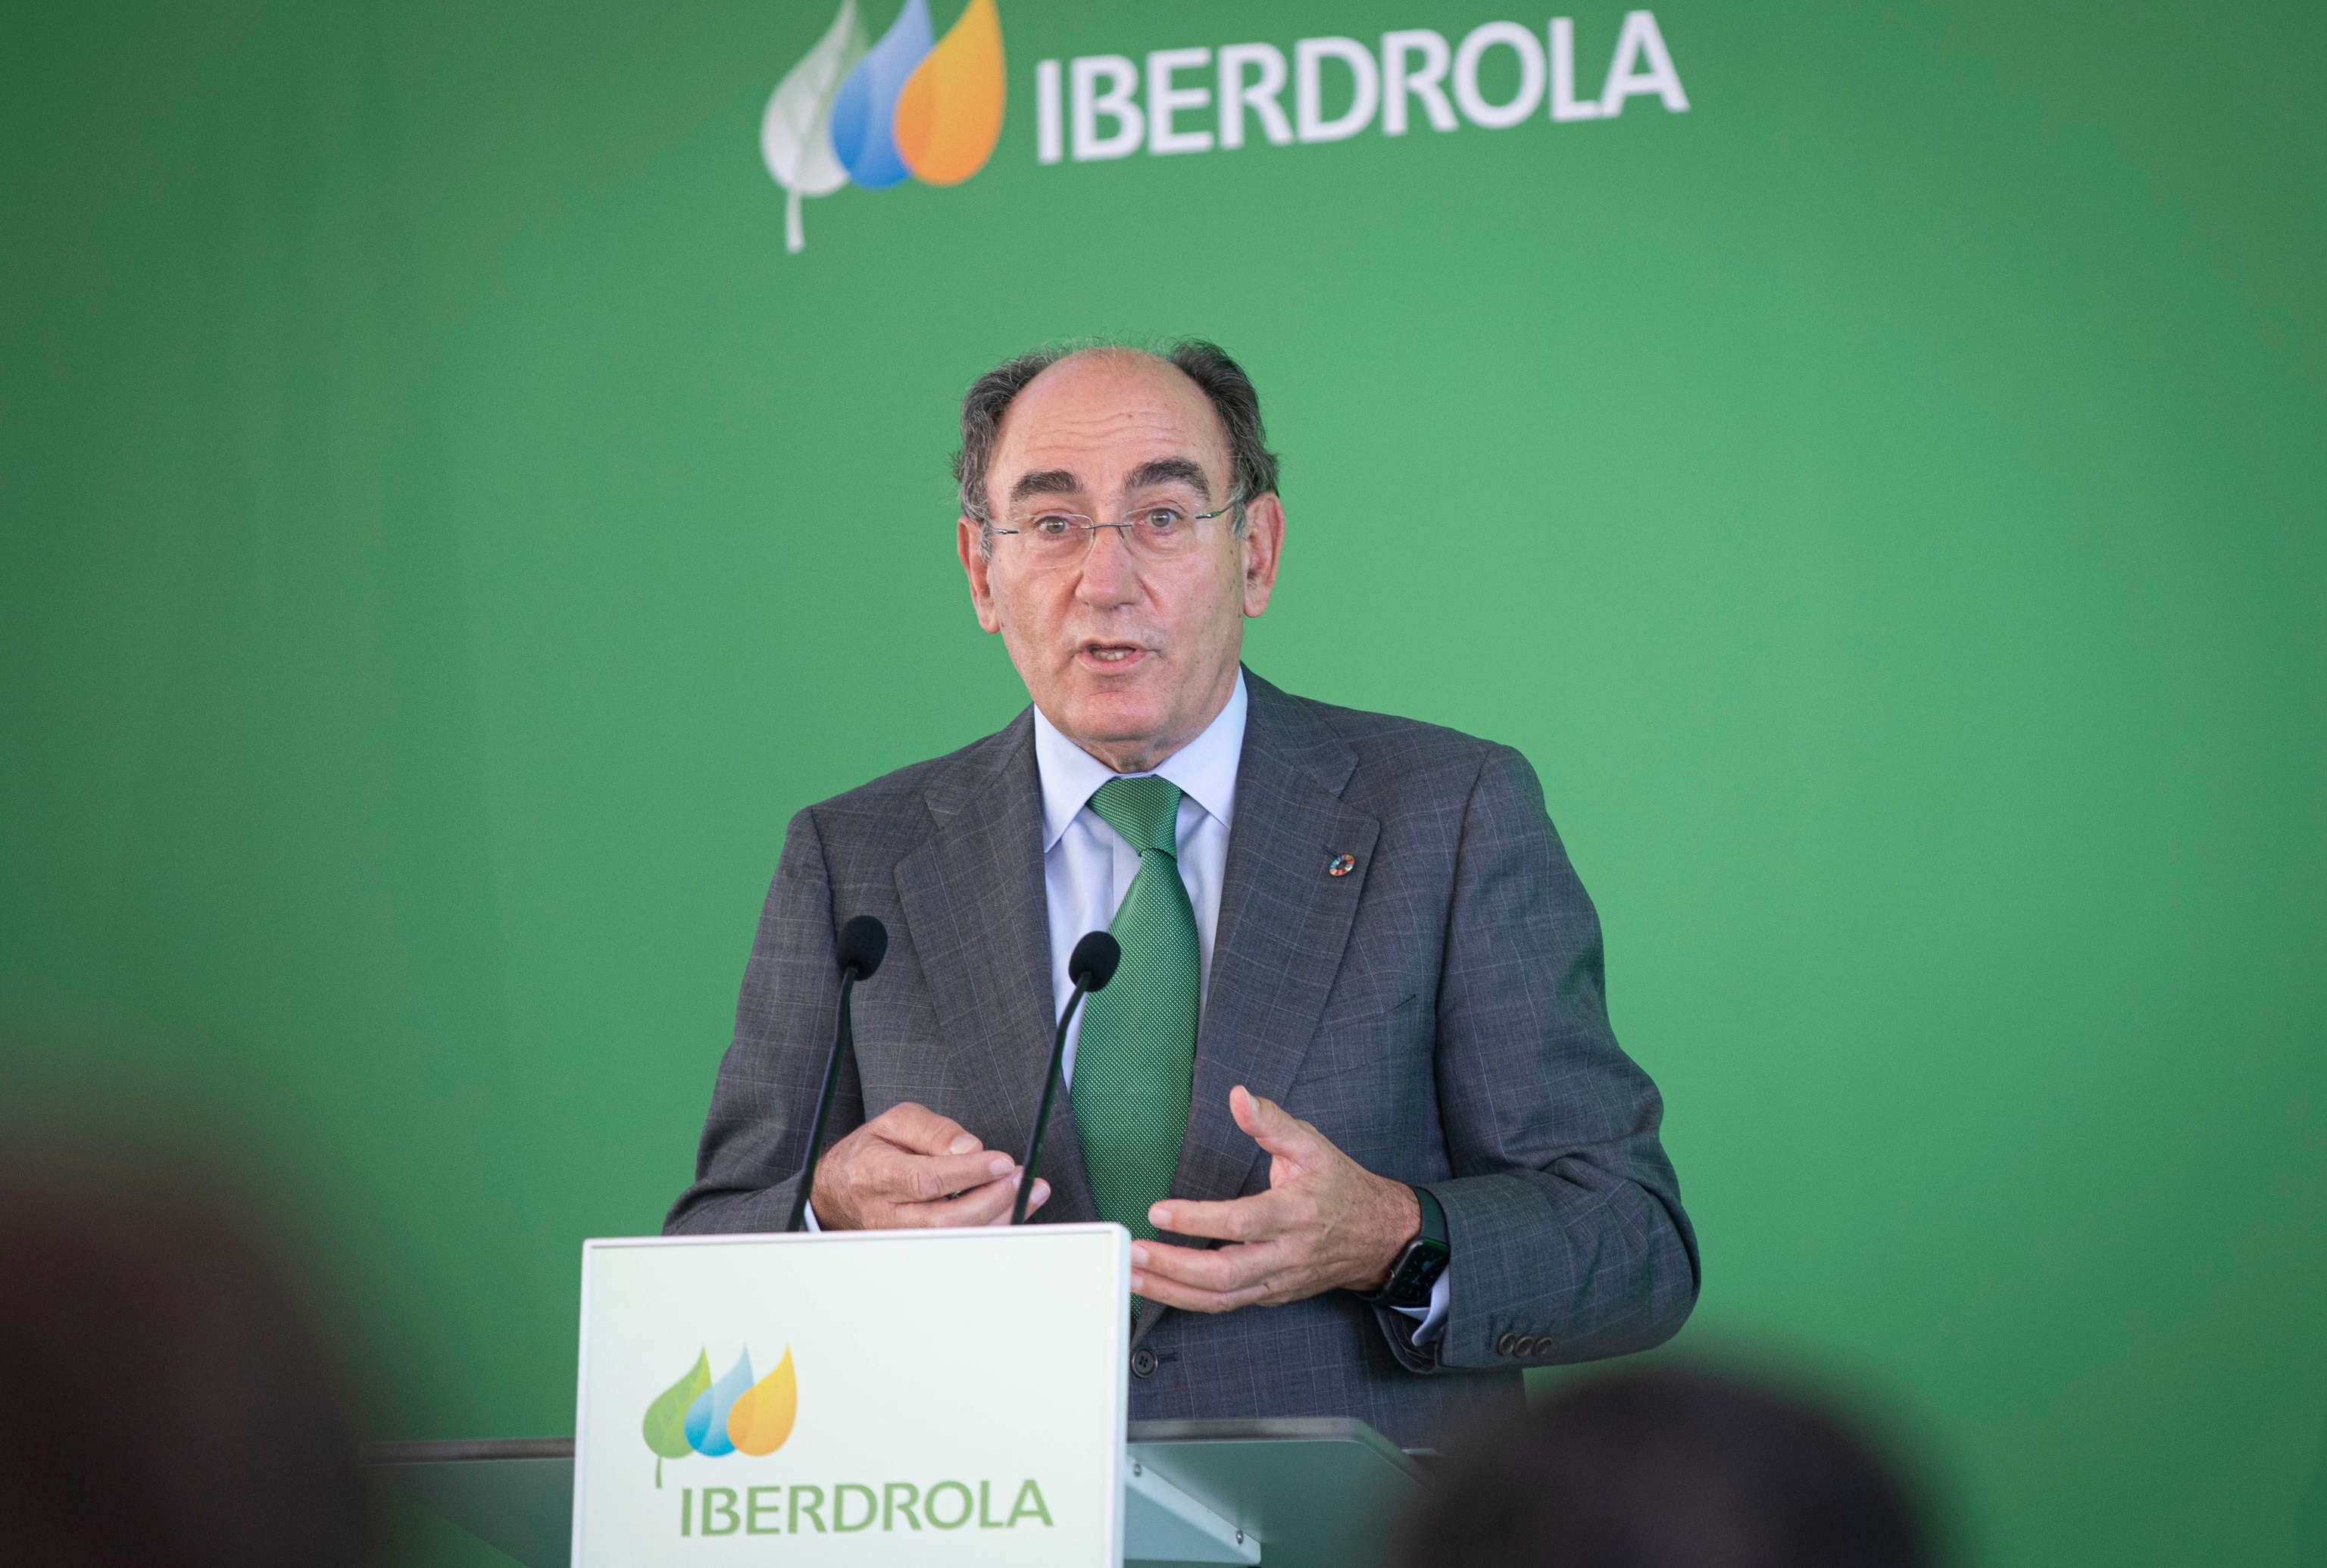 El presidente de Iberdrola Ignacio Snchez Galn durante una intervencin en Andaluca ante los medios de comunicacin previa a la Junta de Accionistas.